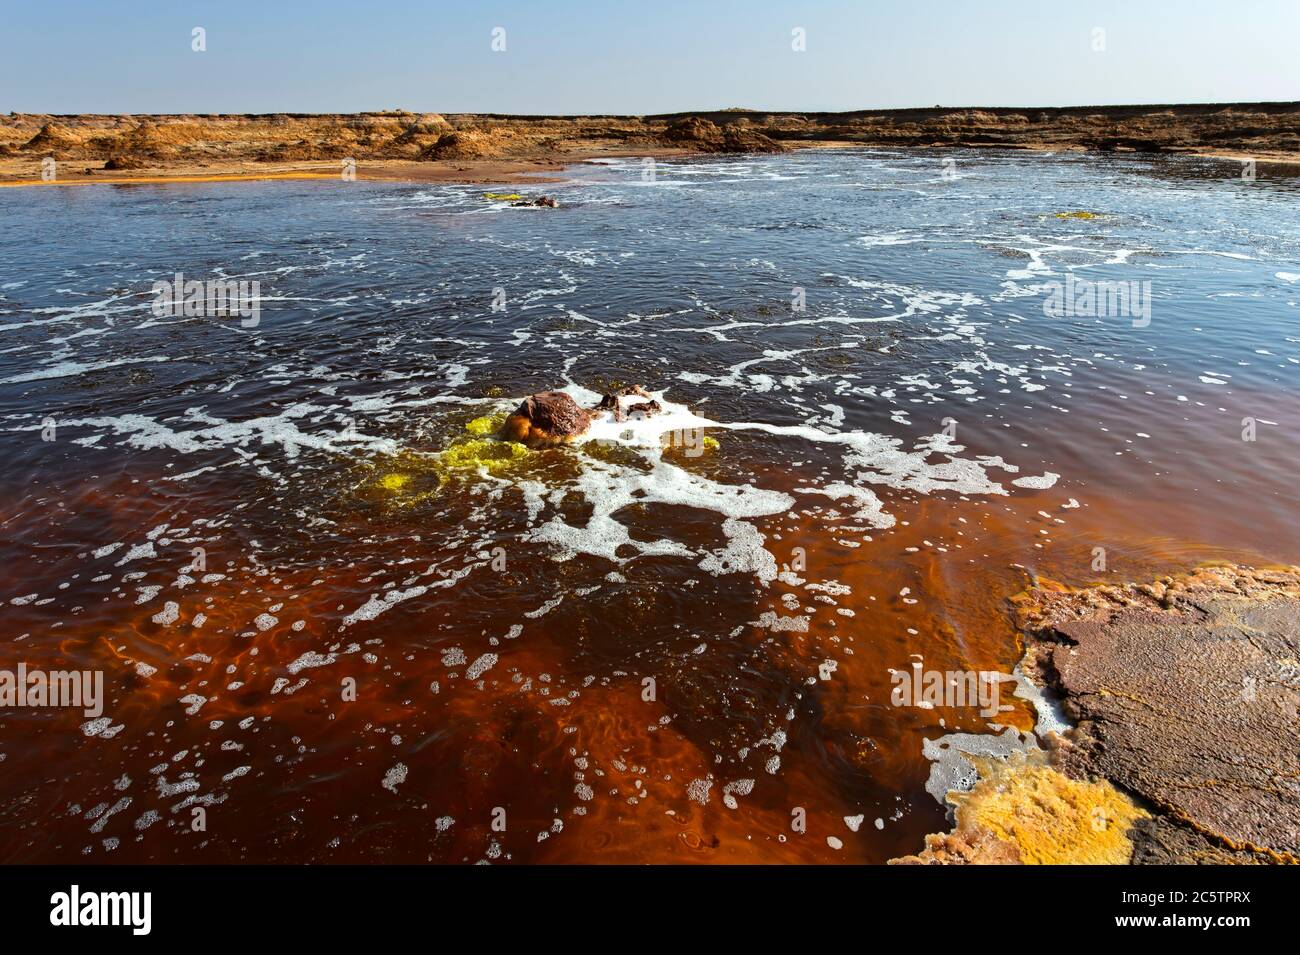 Fuentes burbujeantes de agua hipersalina en el estanque caliente de Gaet'ale, también estanque de petróleo, área geotérmica de Dallol, Hamadela, depresión de Danakil, Etiopía Foto de stock